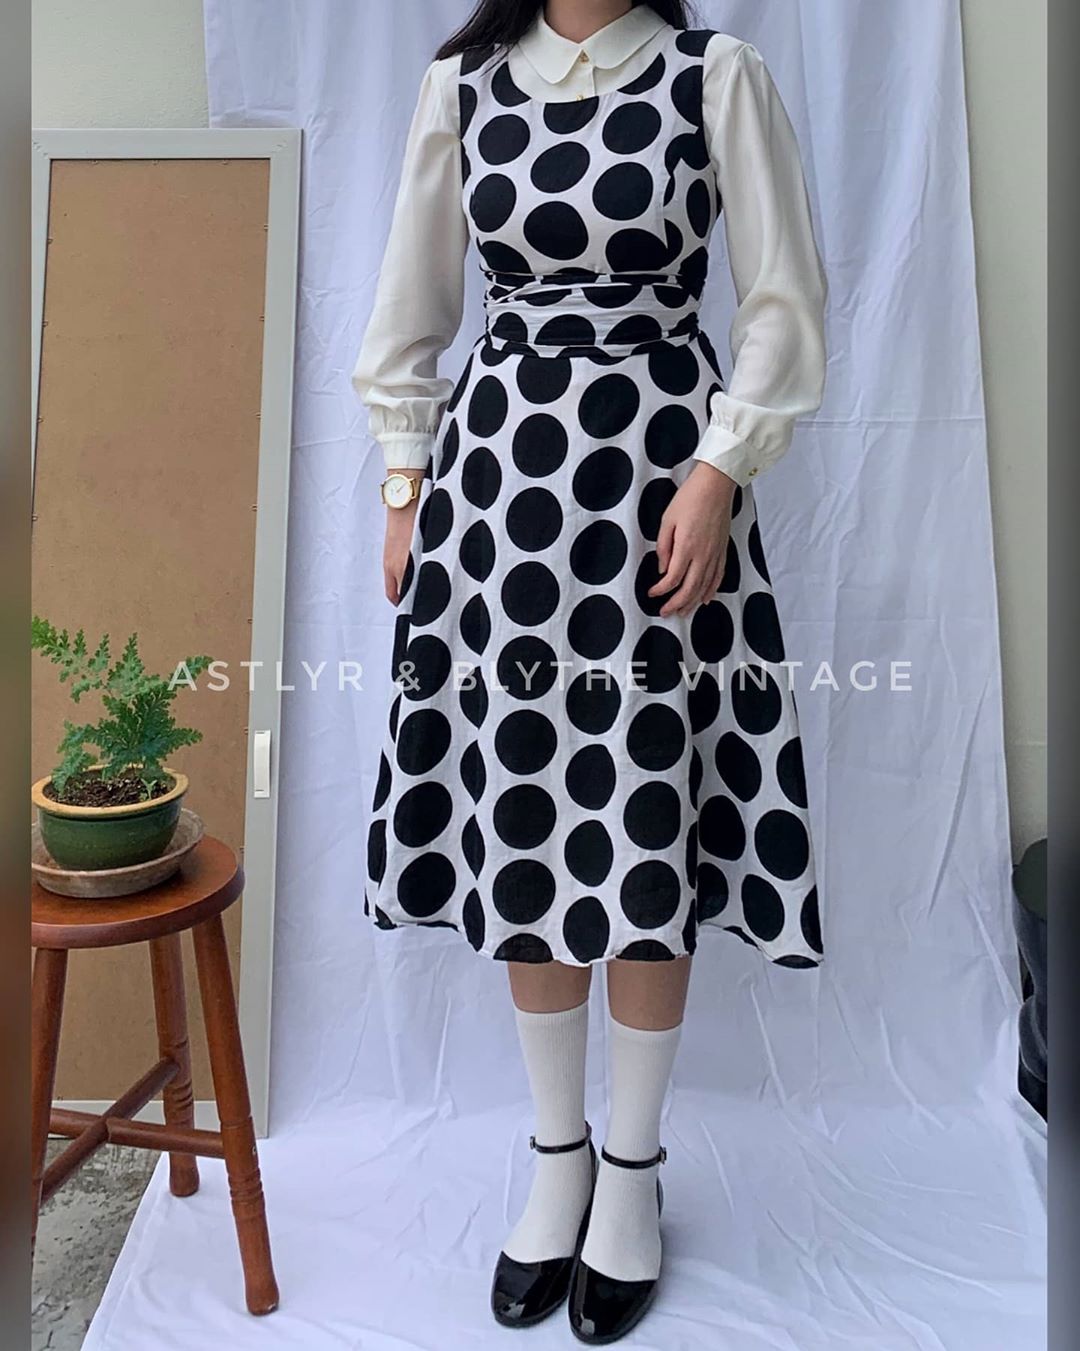 Instagram thrift stores - thrift polka-dot dress